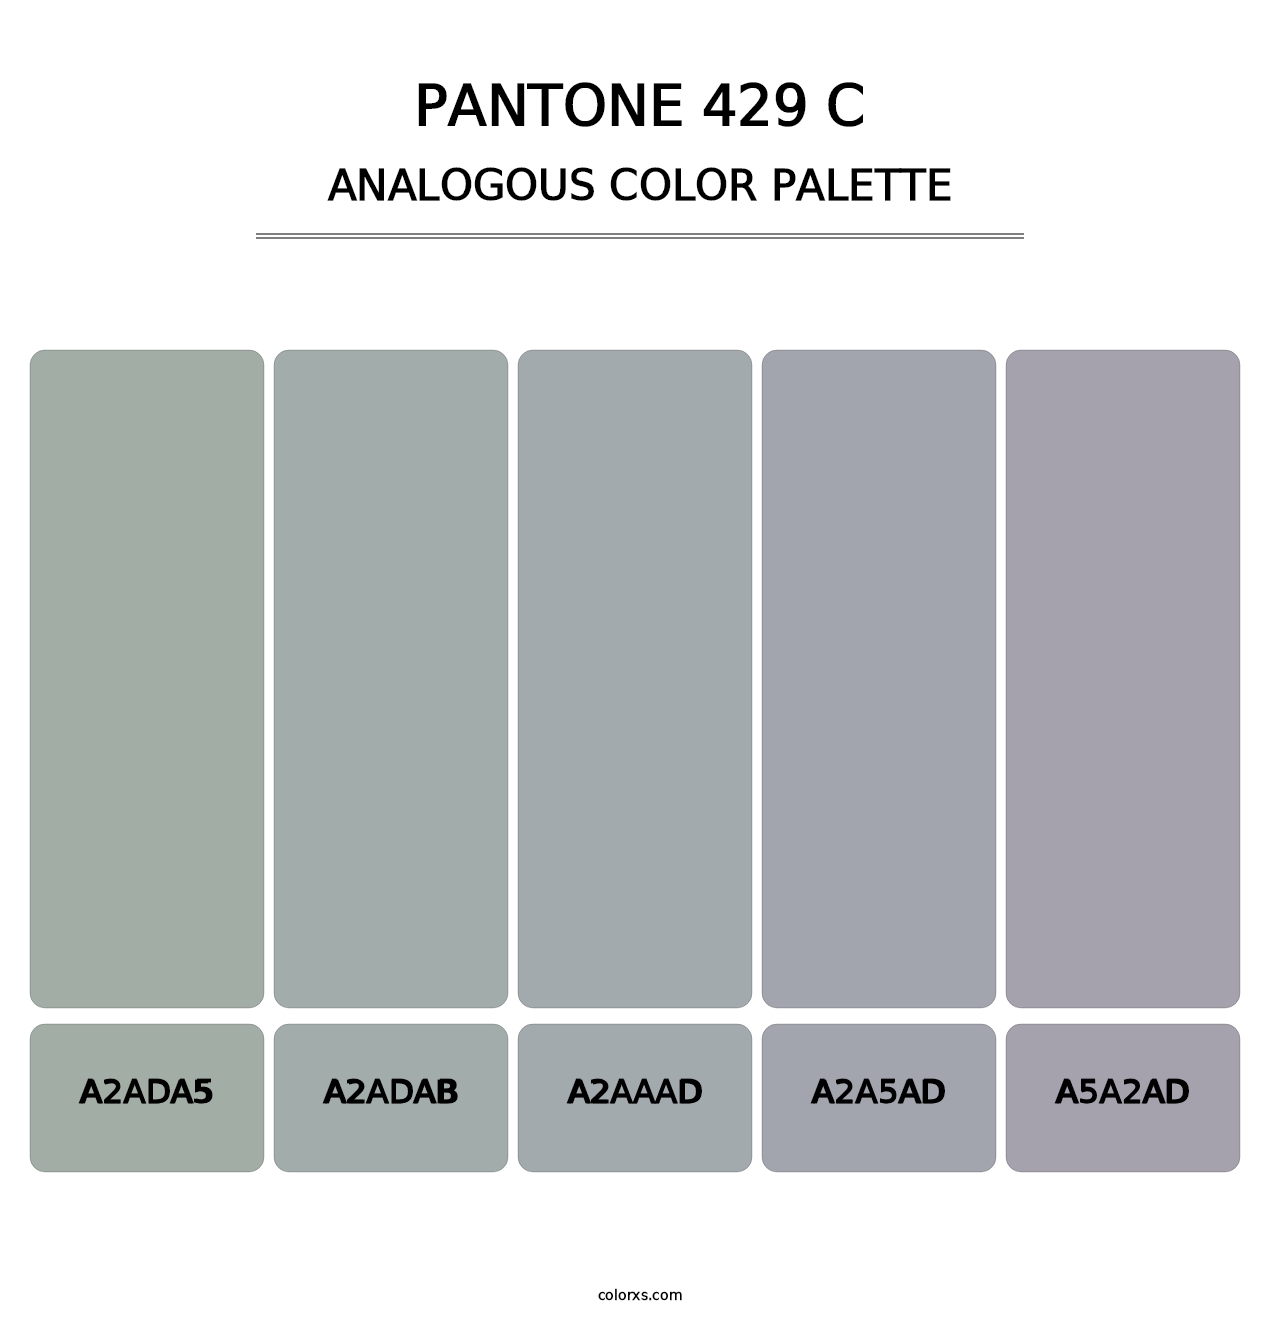 PANTONE 429 C - Analogous Color Palette